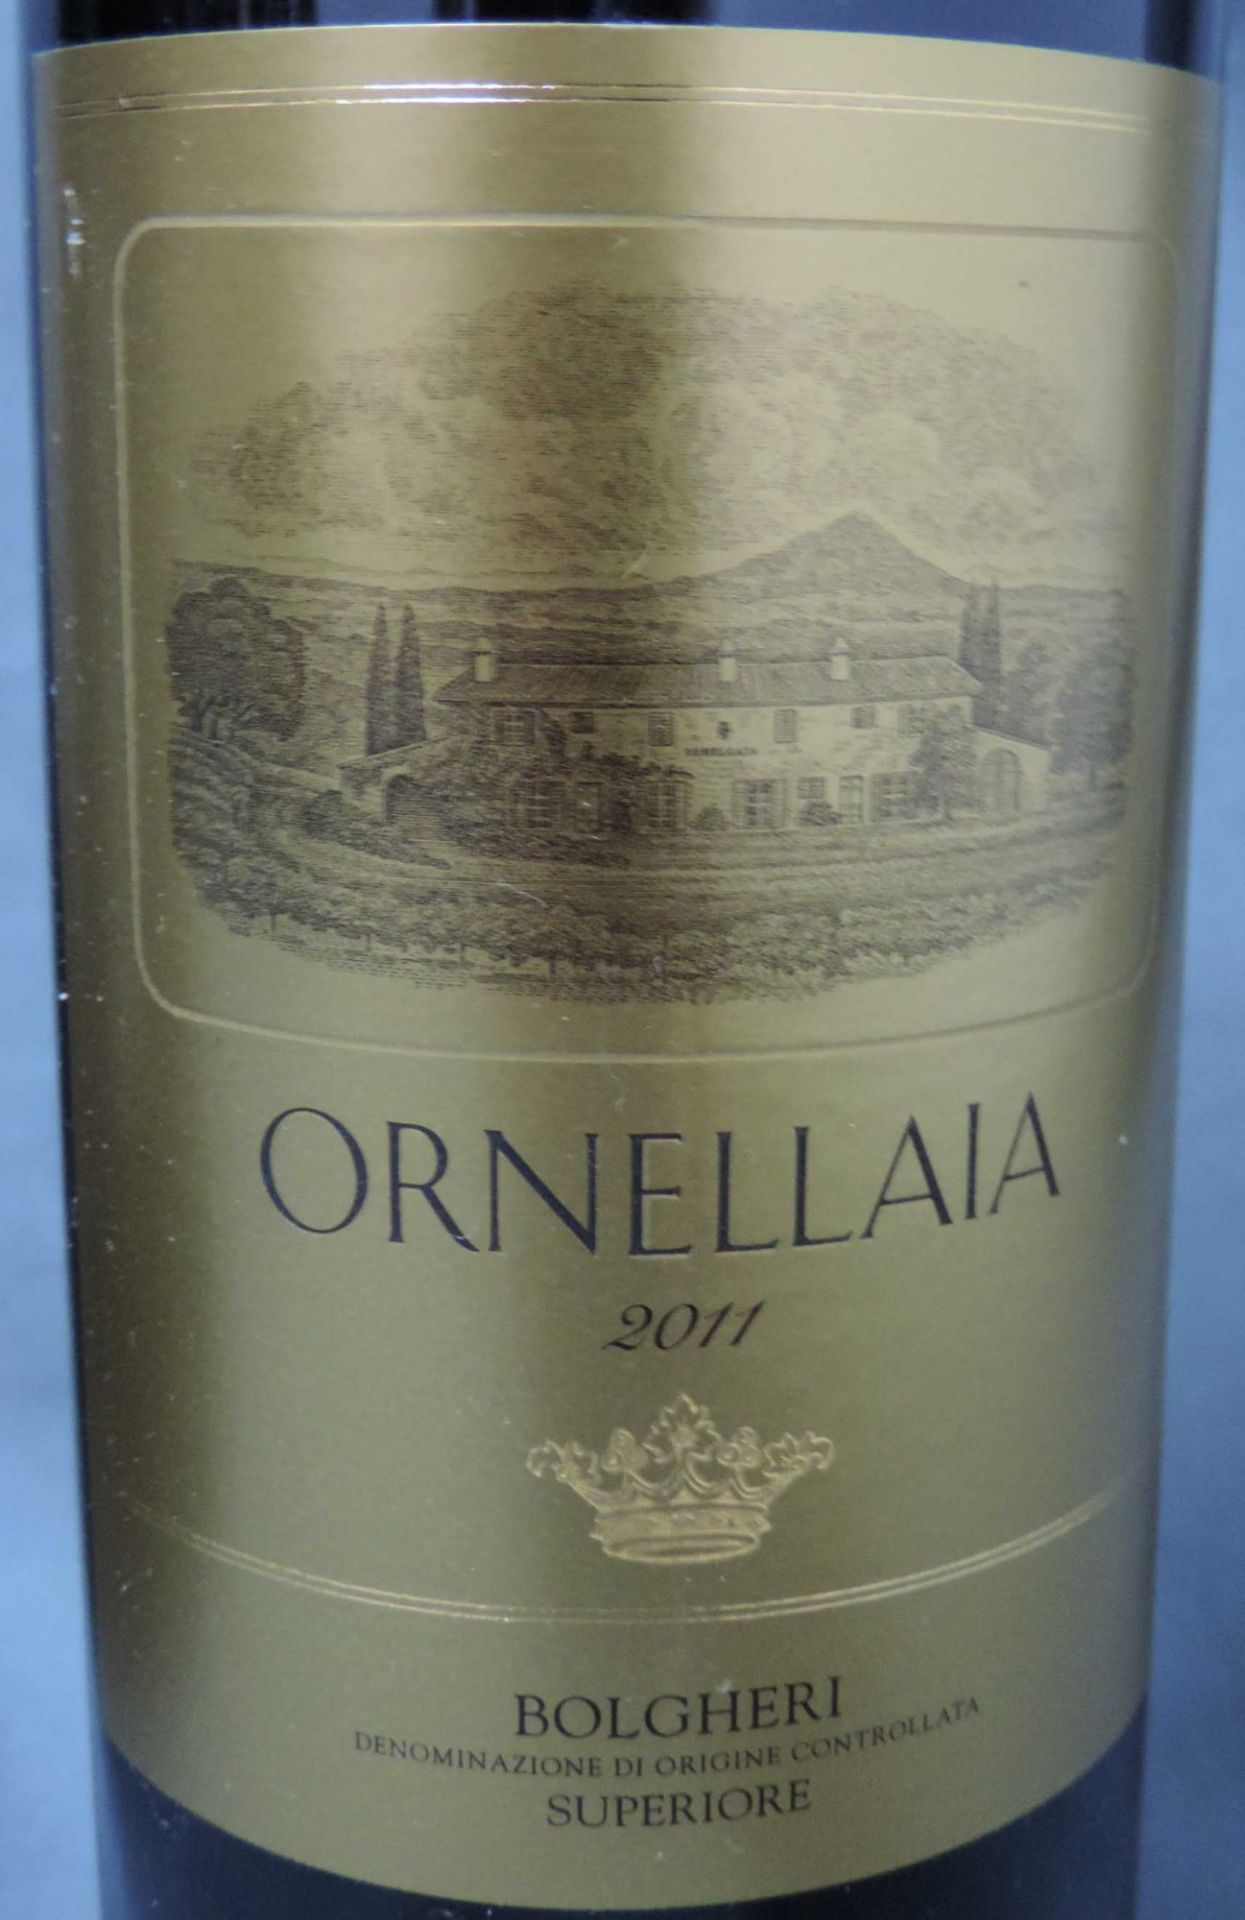 2011 Ornellaia Bolgeri Superiore, Tuscany, 5 Flaschen 750 ml 14,5% vol.Rotwein, Italien.2011 - Bild 2 aus 7